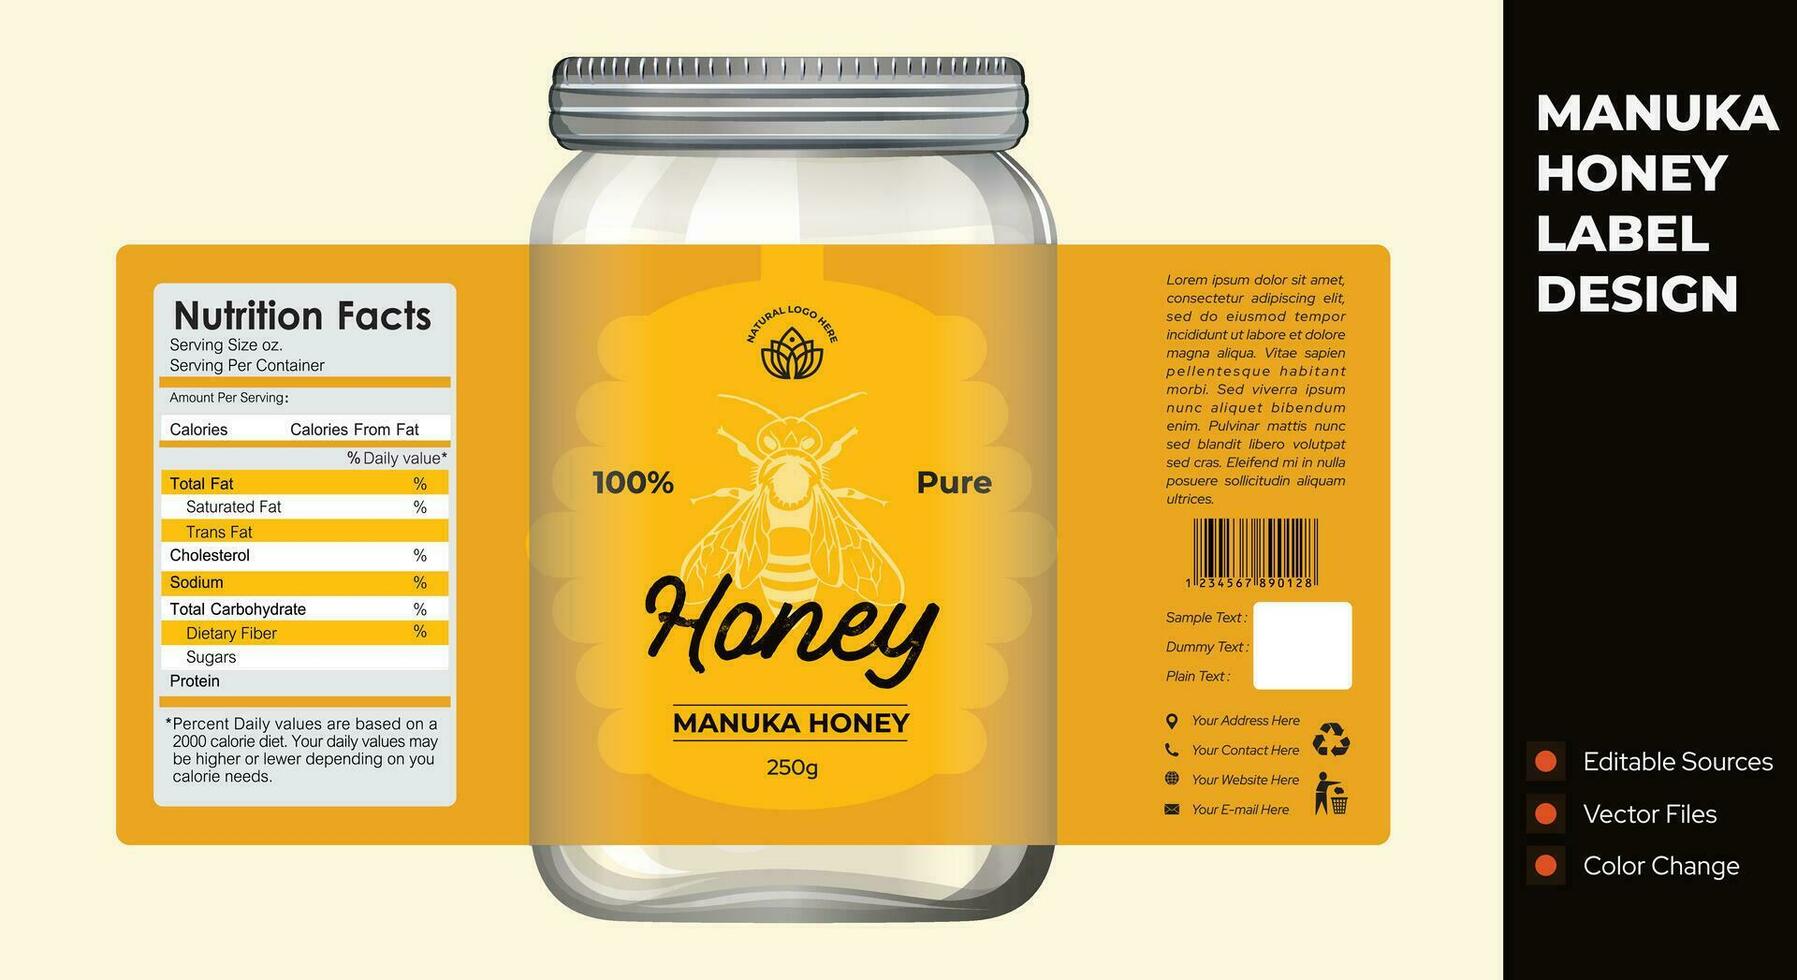 Manuka Honey label design with jar packaging illustration vector